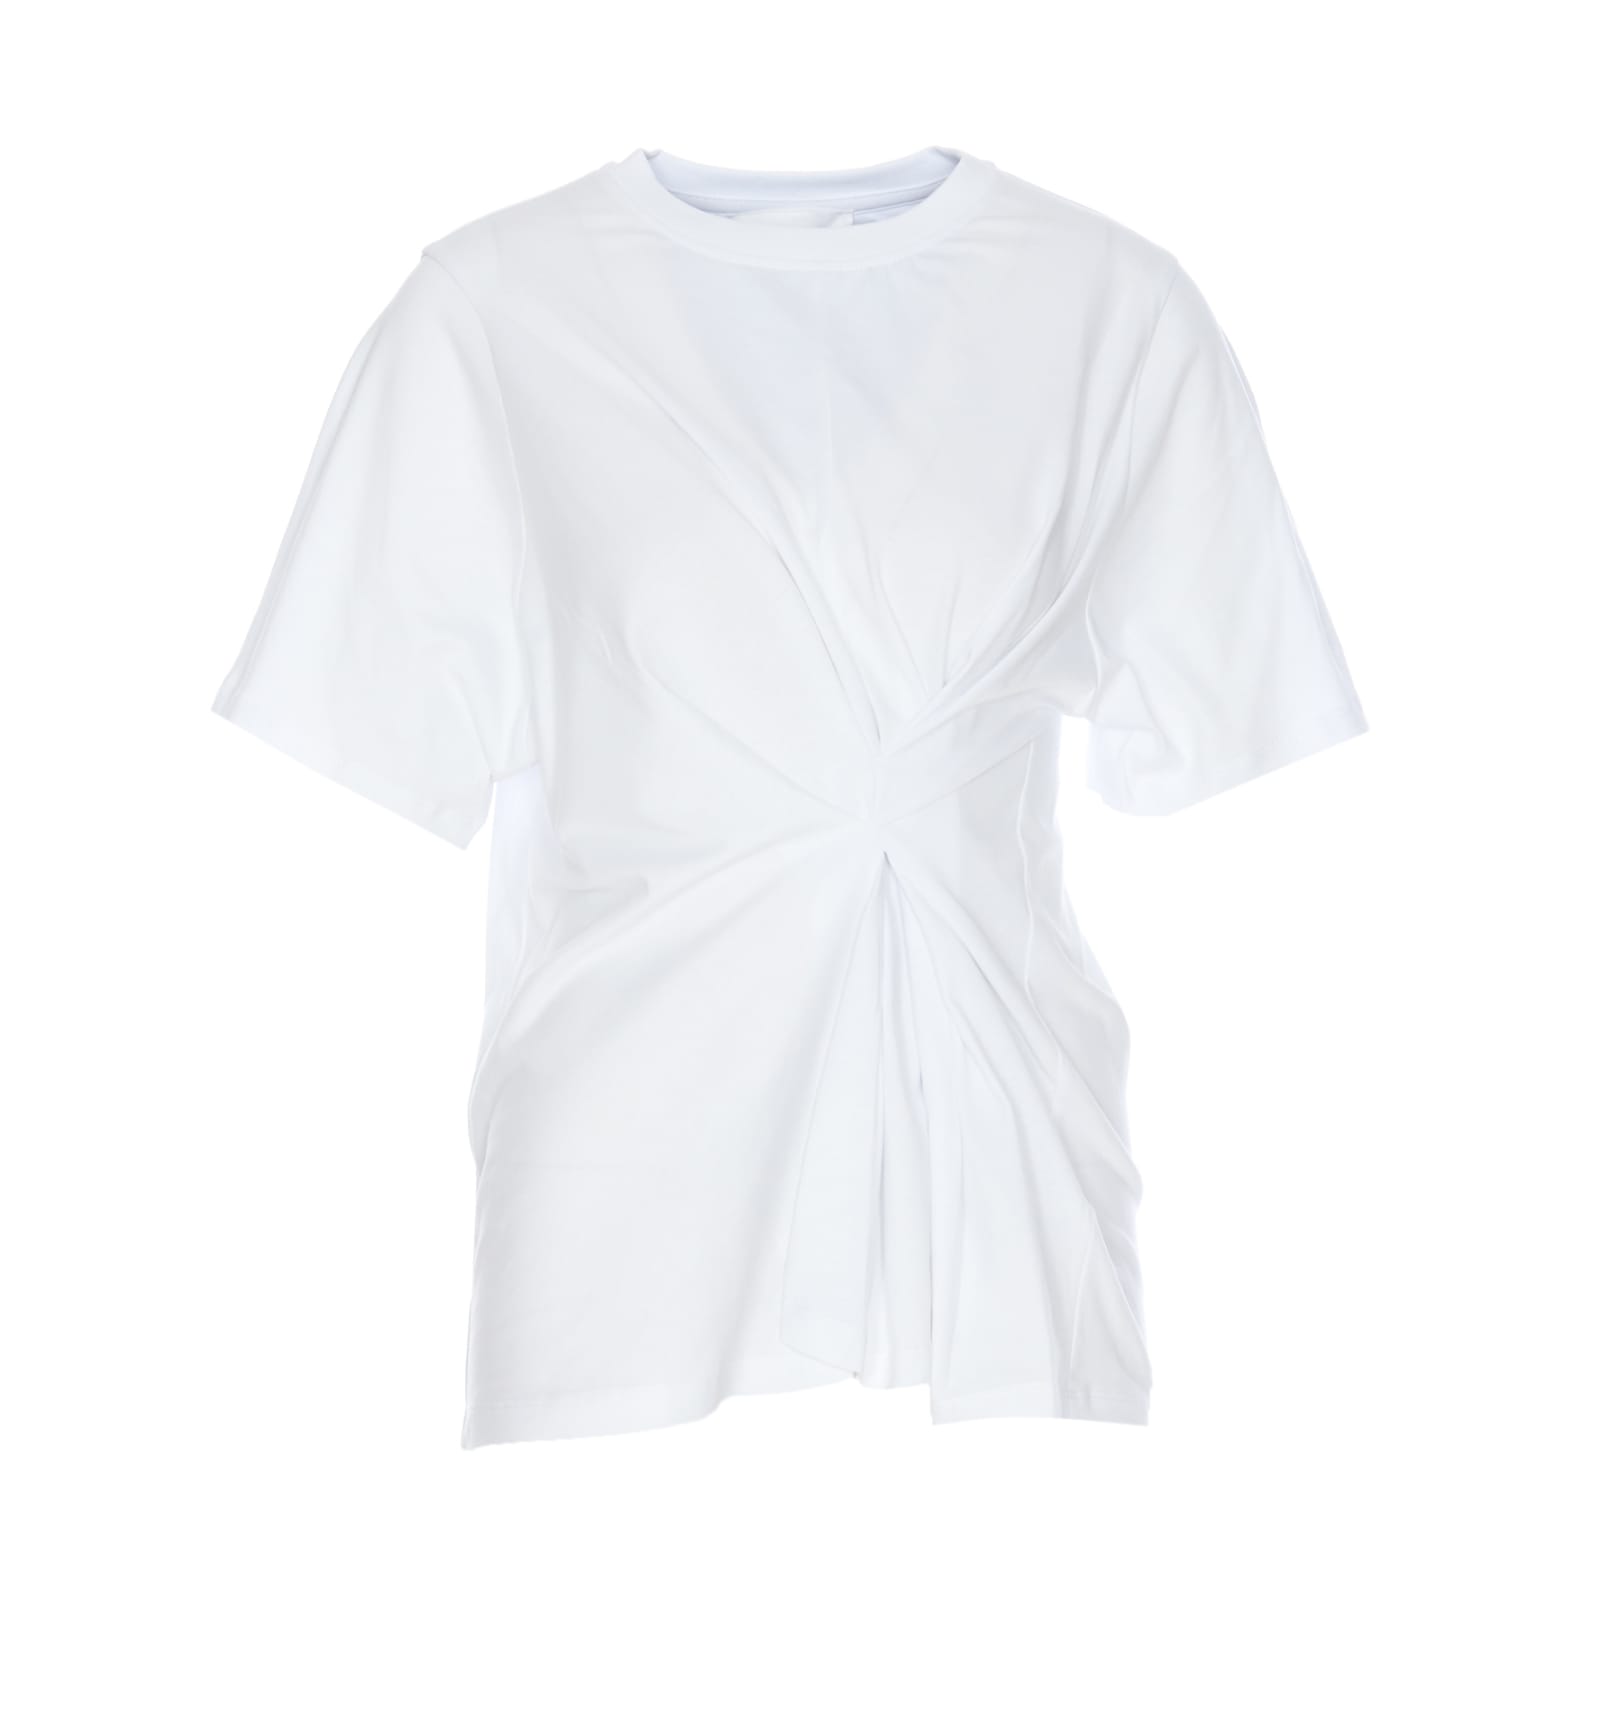 Victoria Beckham Body Twist T-shirt In White